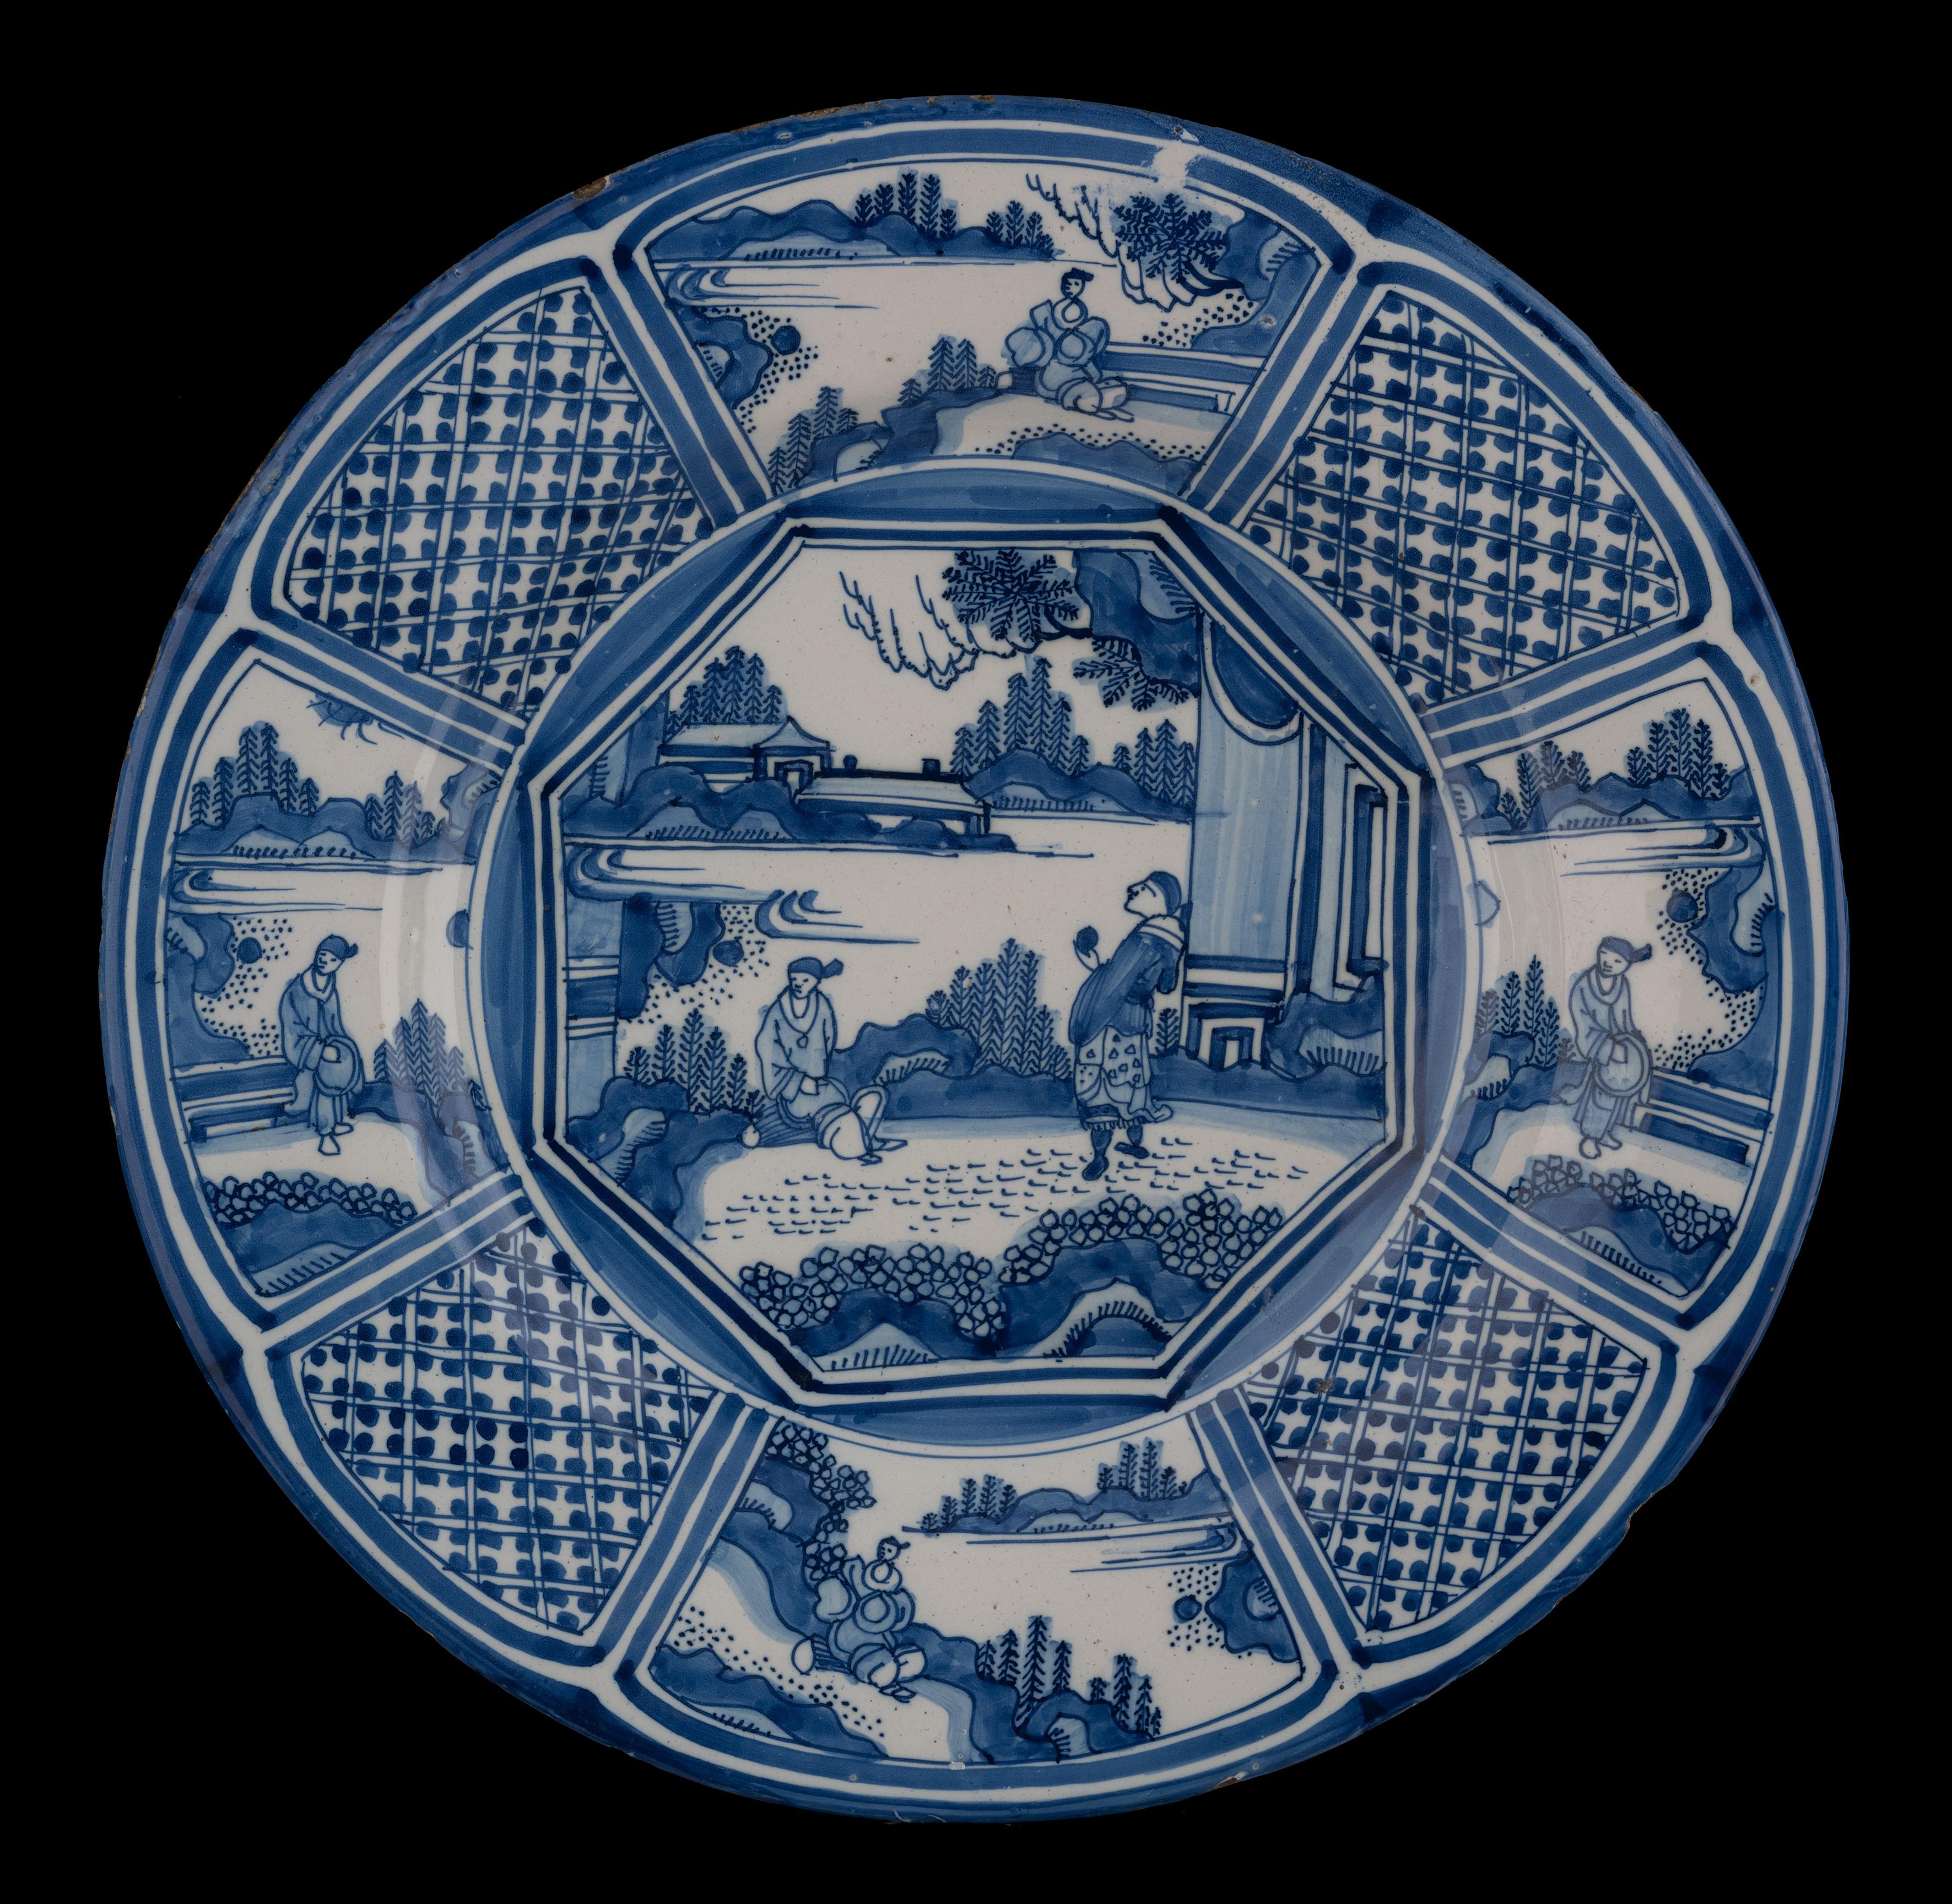 Die blau-weiße Schale hat einen breiten, flachen Flansch und ist in der Mitte mit zwei chinesischen Figuren auf einer Terrasse in einer orientalischen Gartenlandschaft bemalt. Im Hintergrund sind zwei Pavillons zu sehen. Die Szene wird von einem